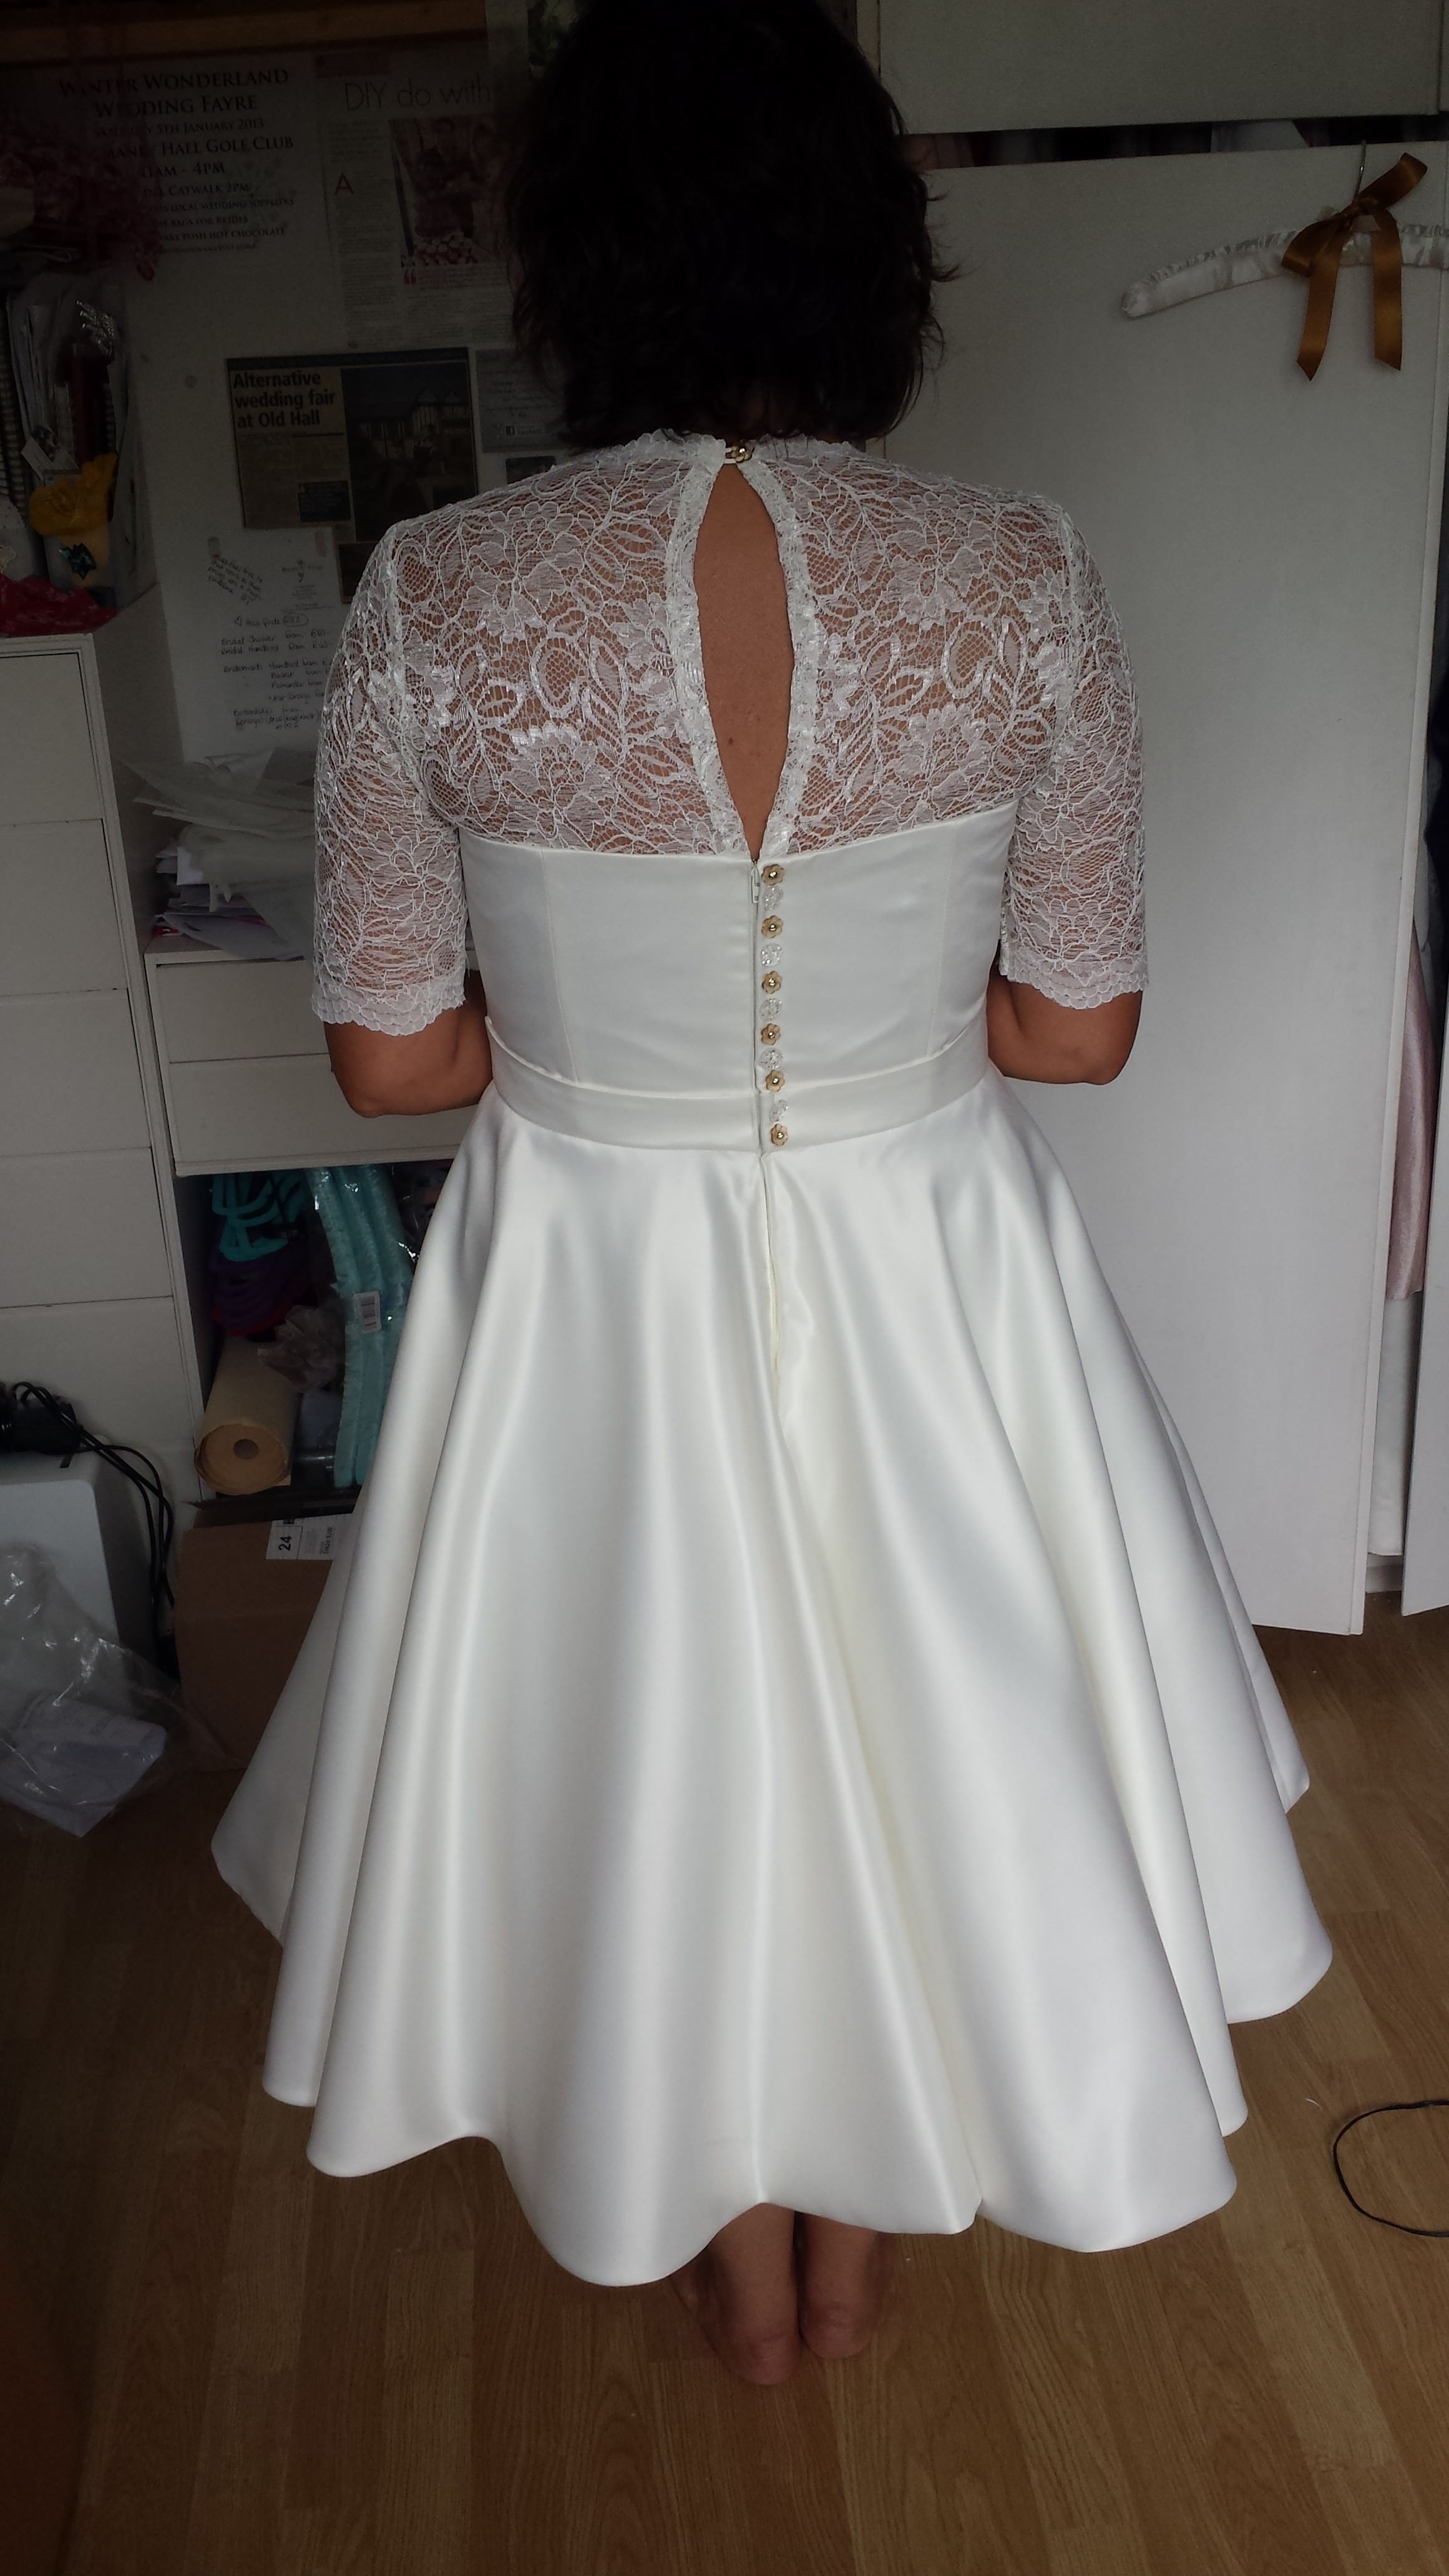 Bespoke 50's inspired swing wedding dress